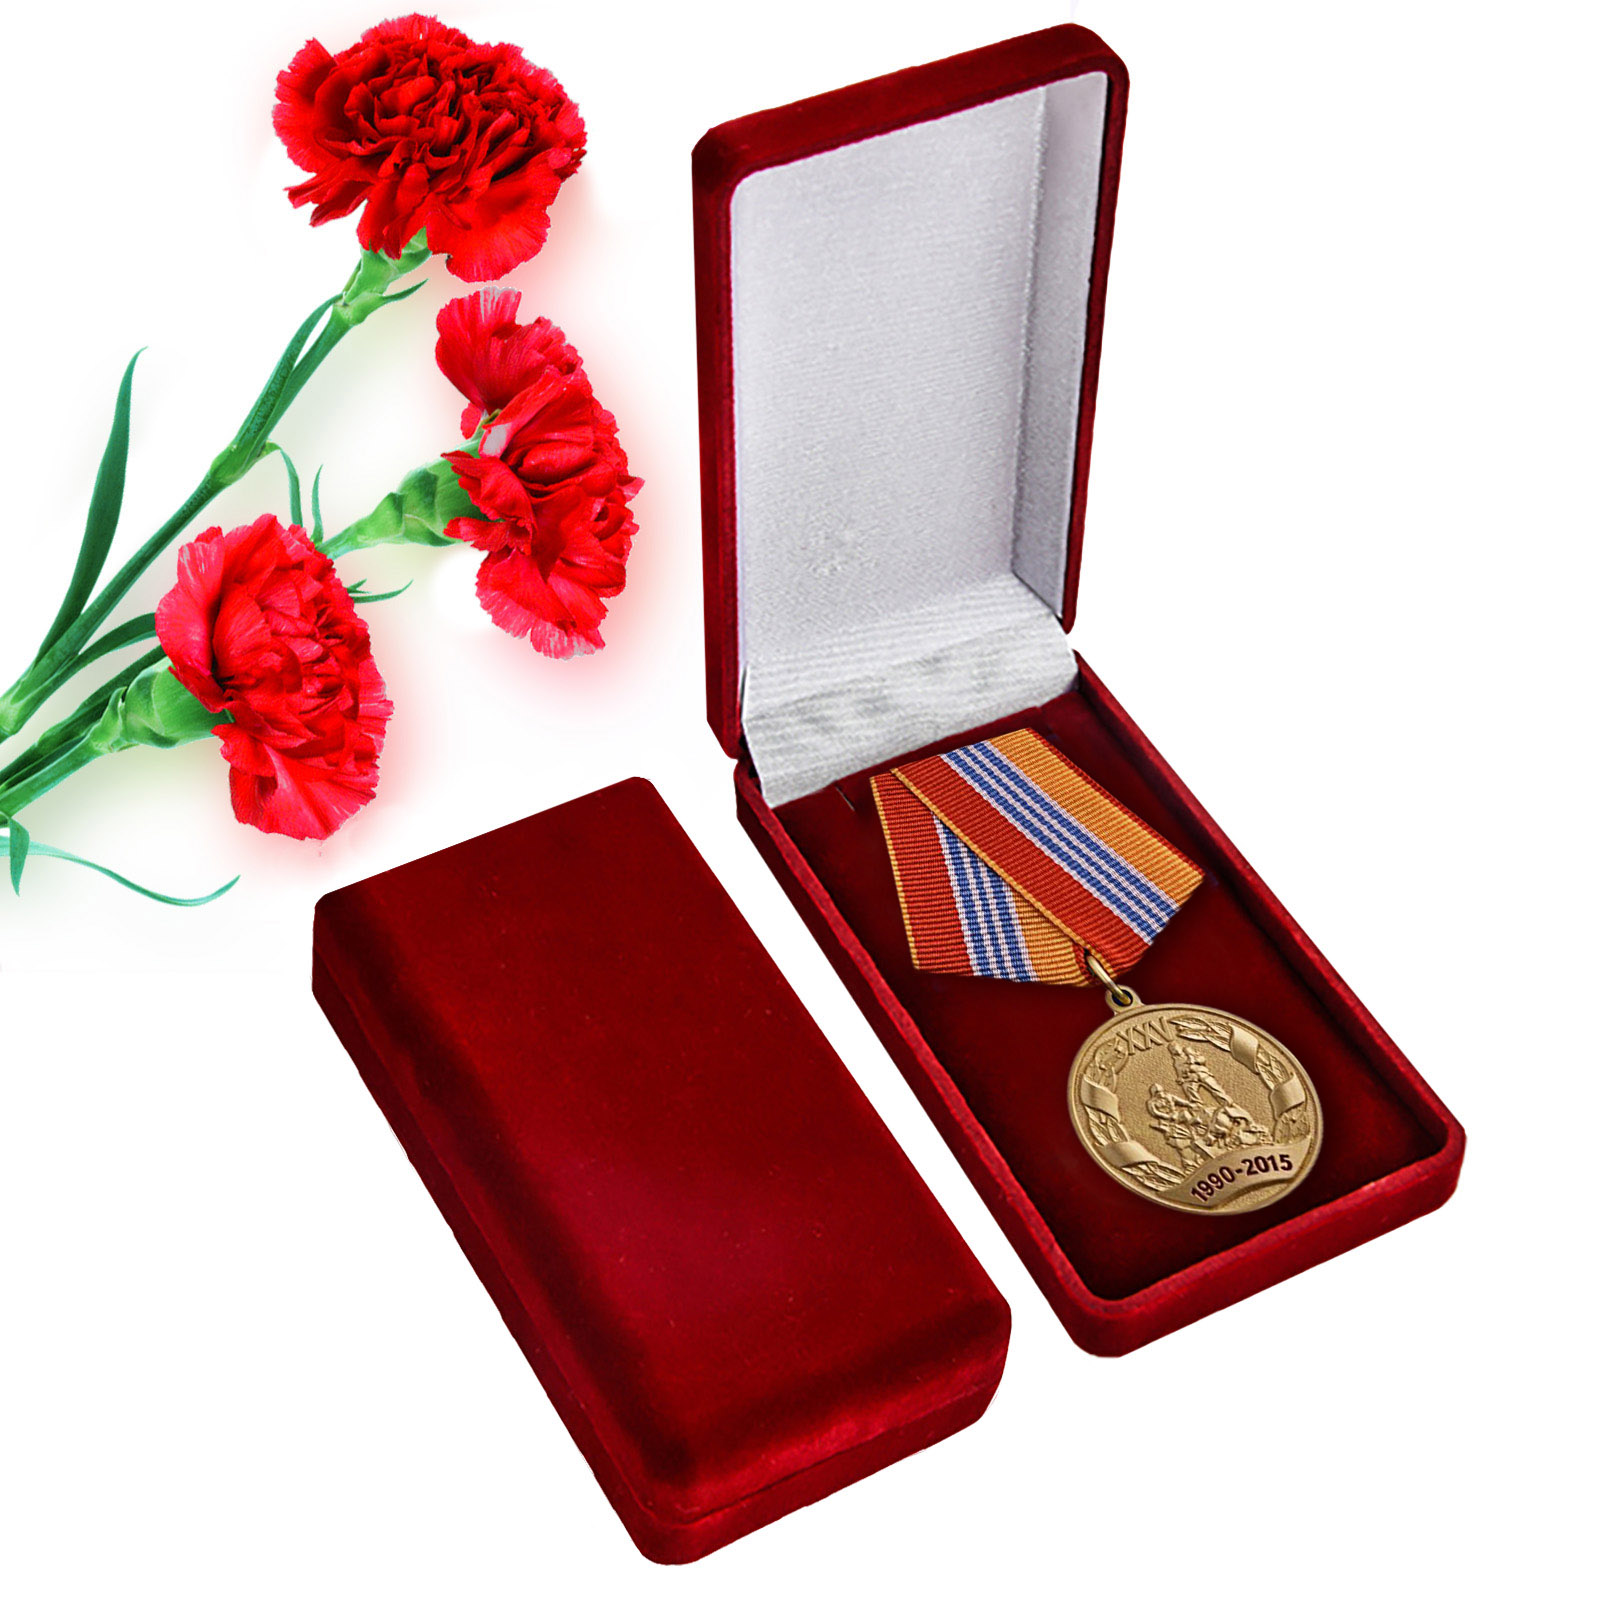 Купить ведомственную медаль "МЧС России 25 лет" по лучшей цене